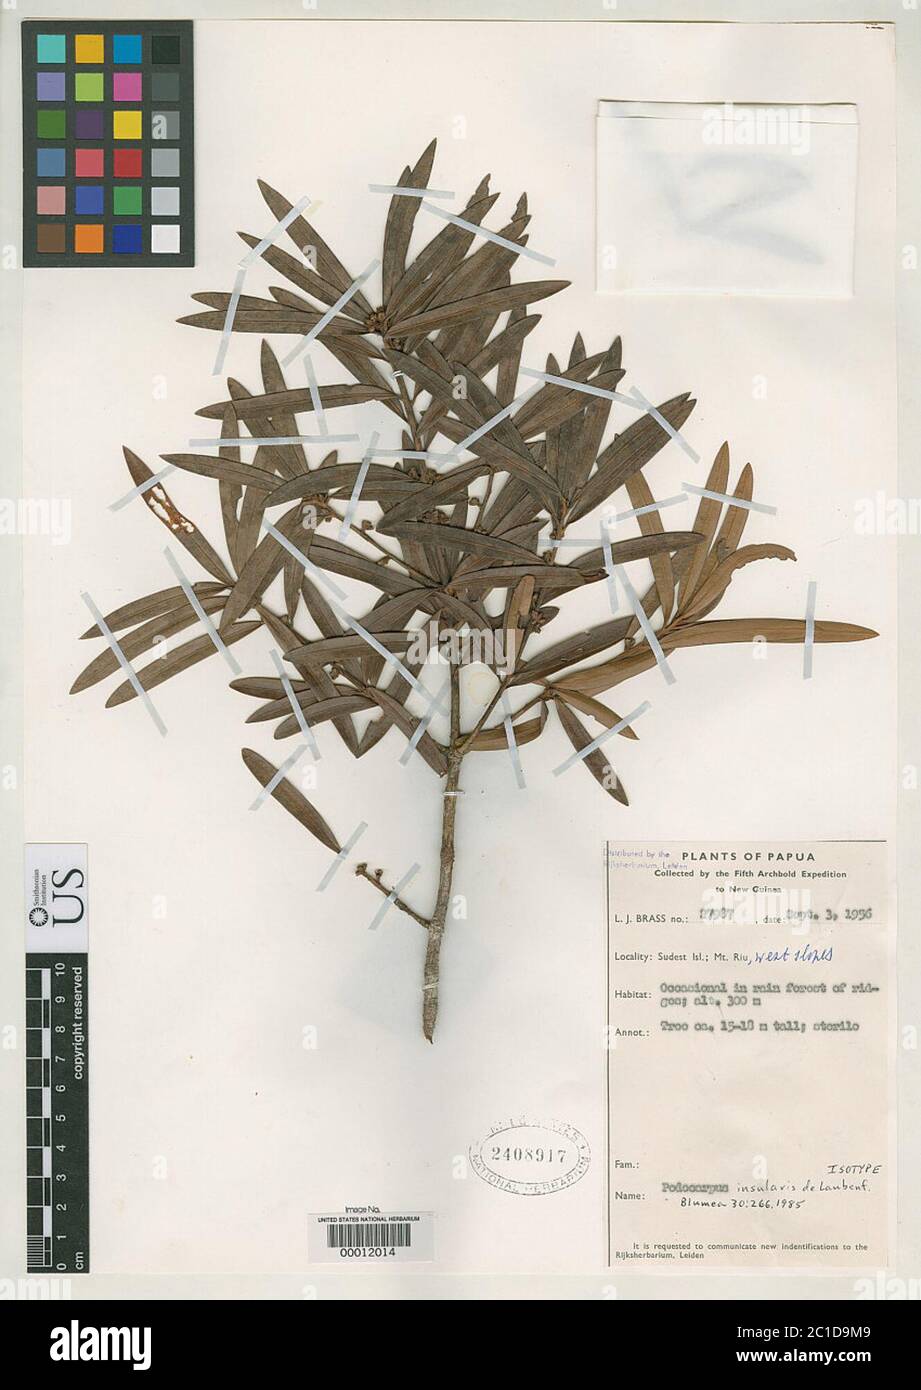 Podocarpus insularis de Laub Podocarpus insularis de Laub. Stock Photo